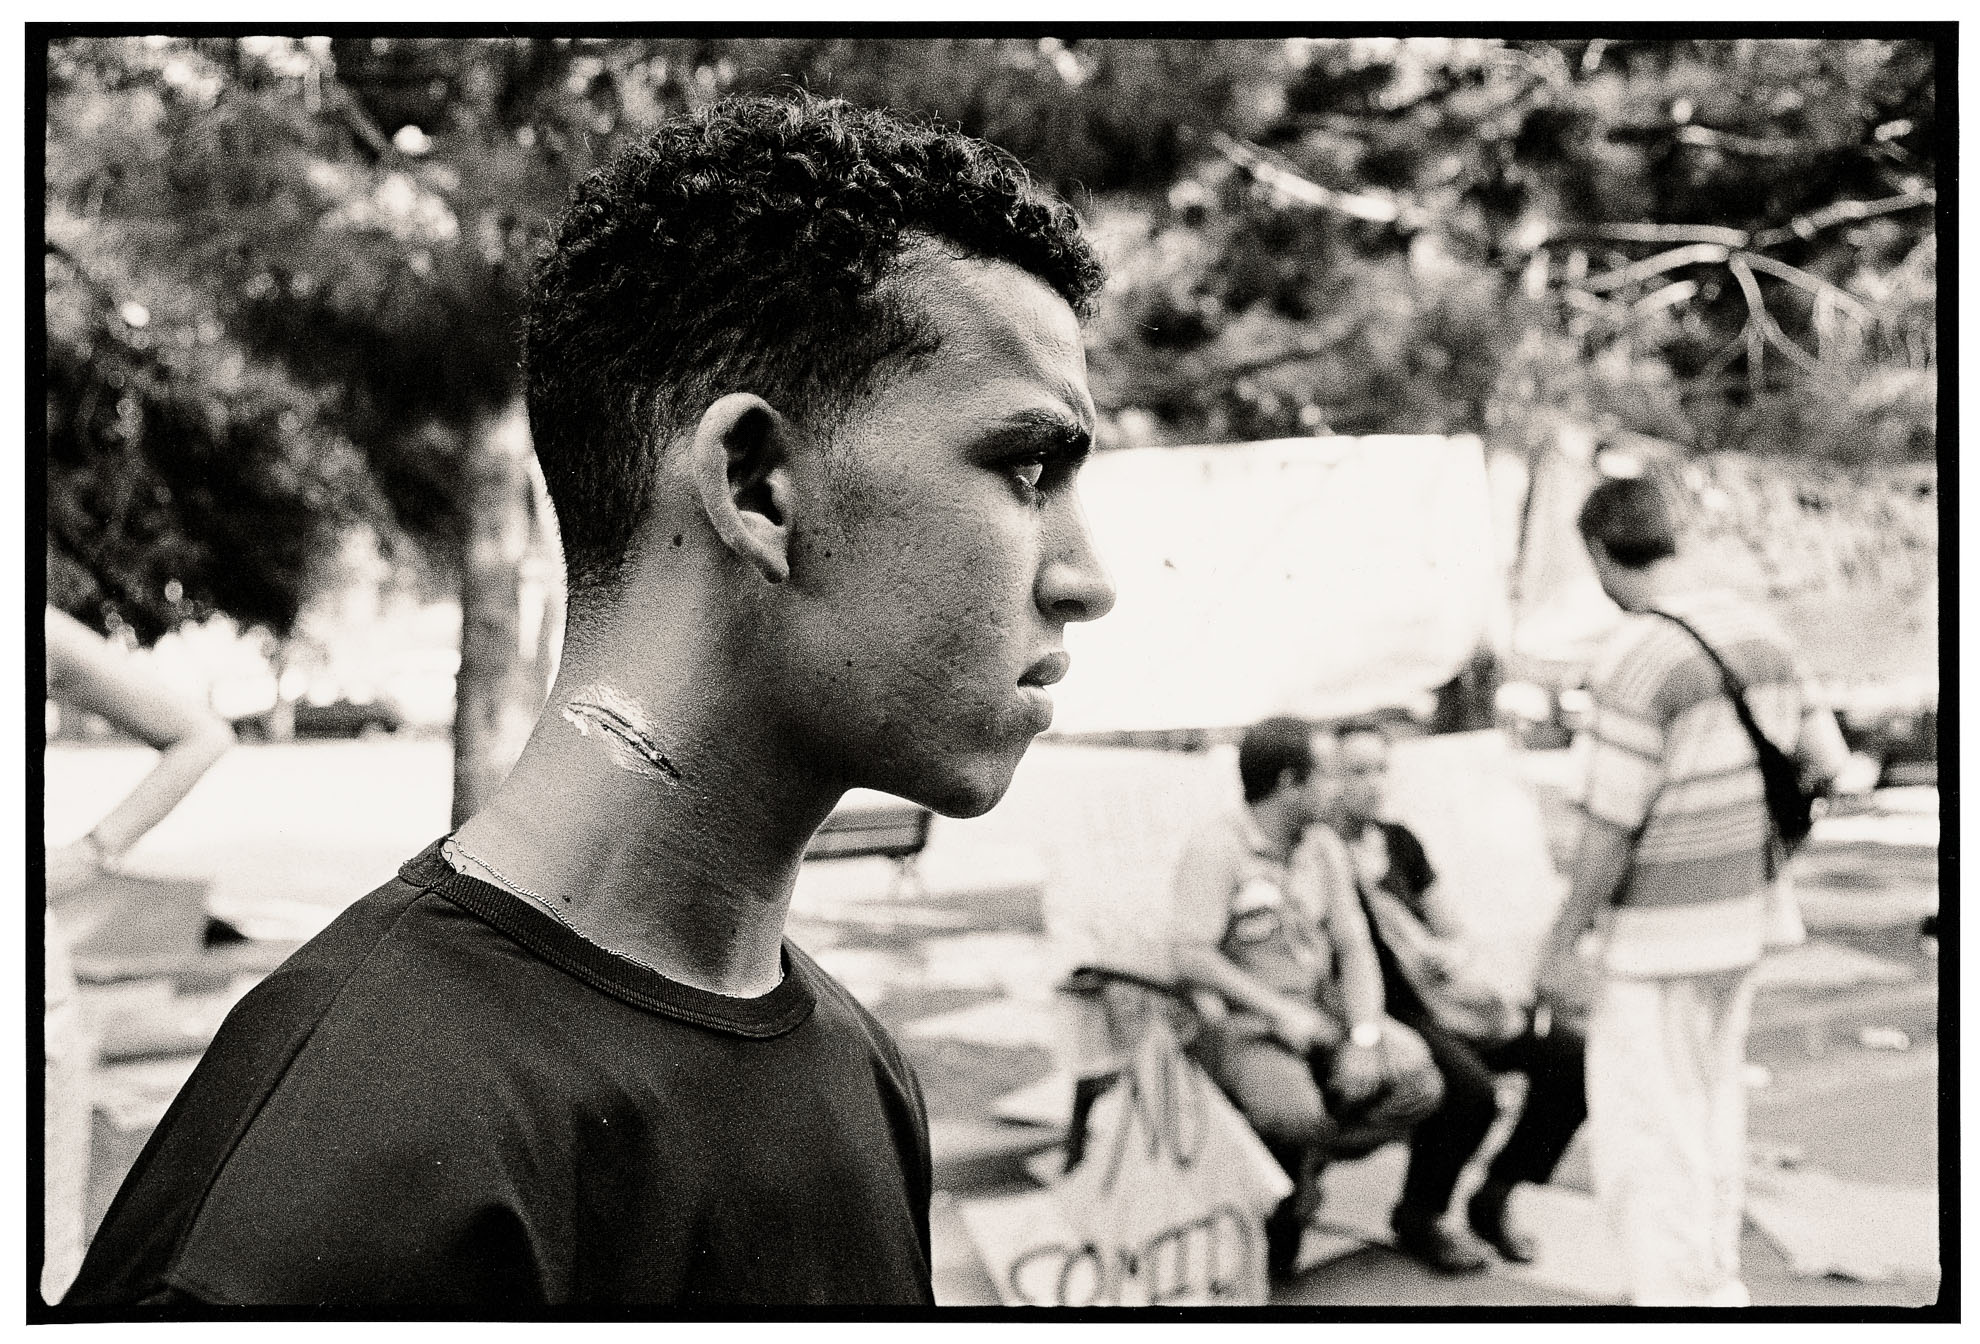 En agosto de 2001, durante uno de los picos de llegadas de migrantes a España, dos centenares de ellos se concentran en una plaza en Barcelona reclamando opciones de acogida. Se registraron entonces episodios de brutalidad policial al intentar desalojarlos. Unas 60 personas fueron detenidas.